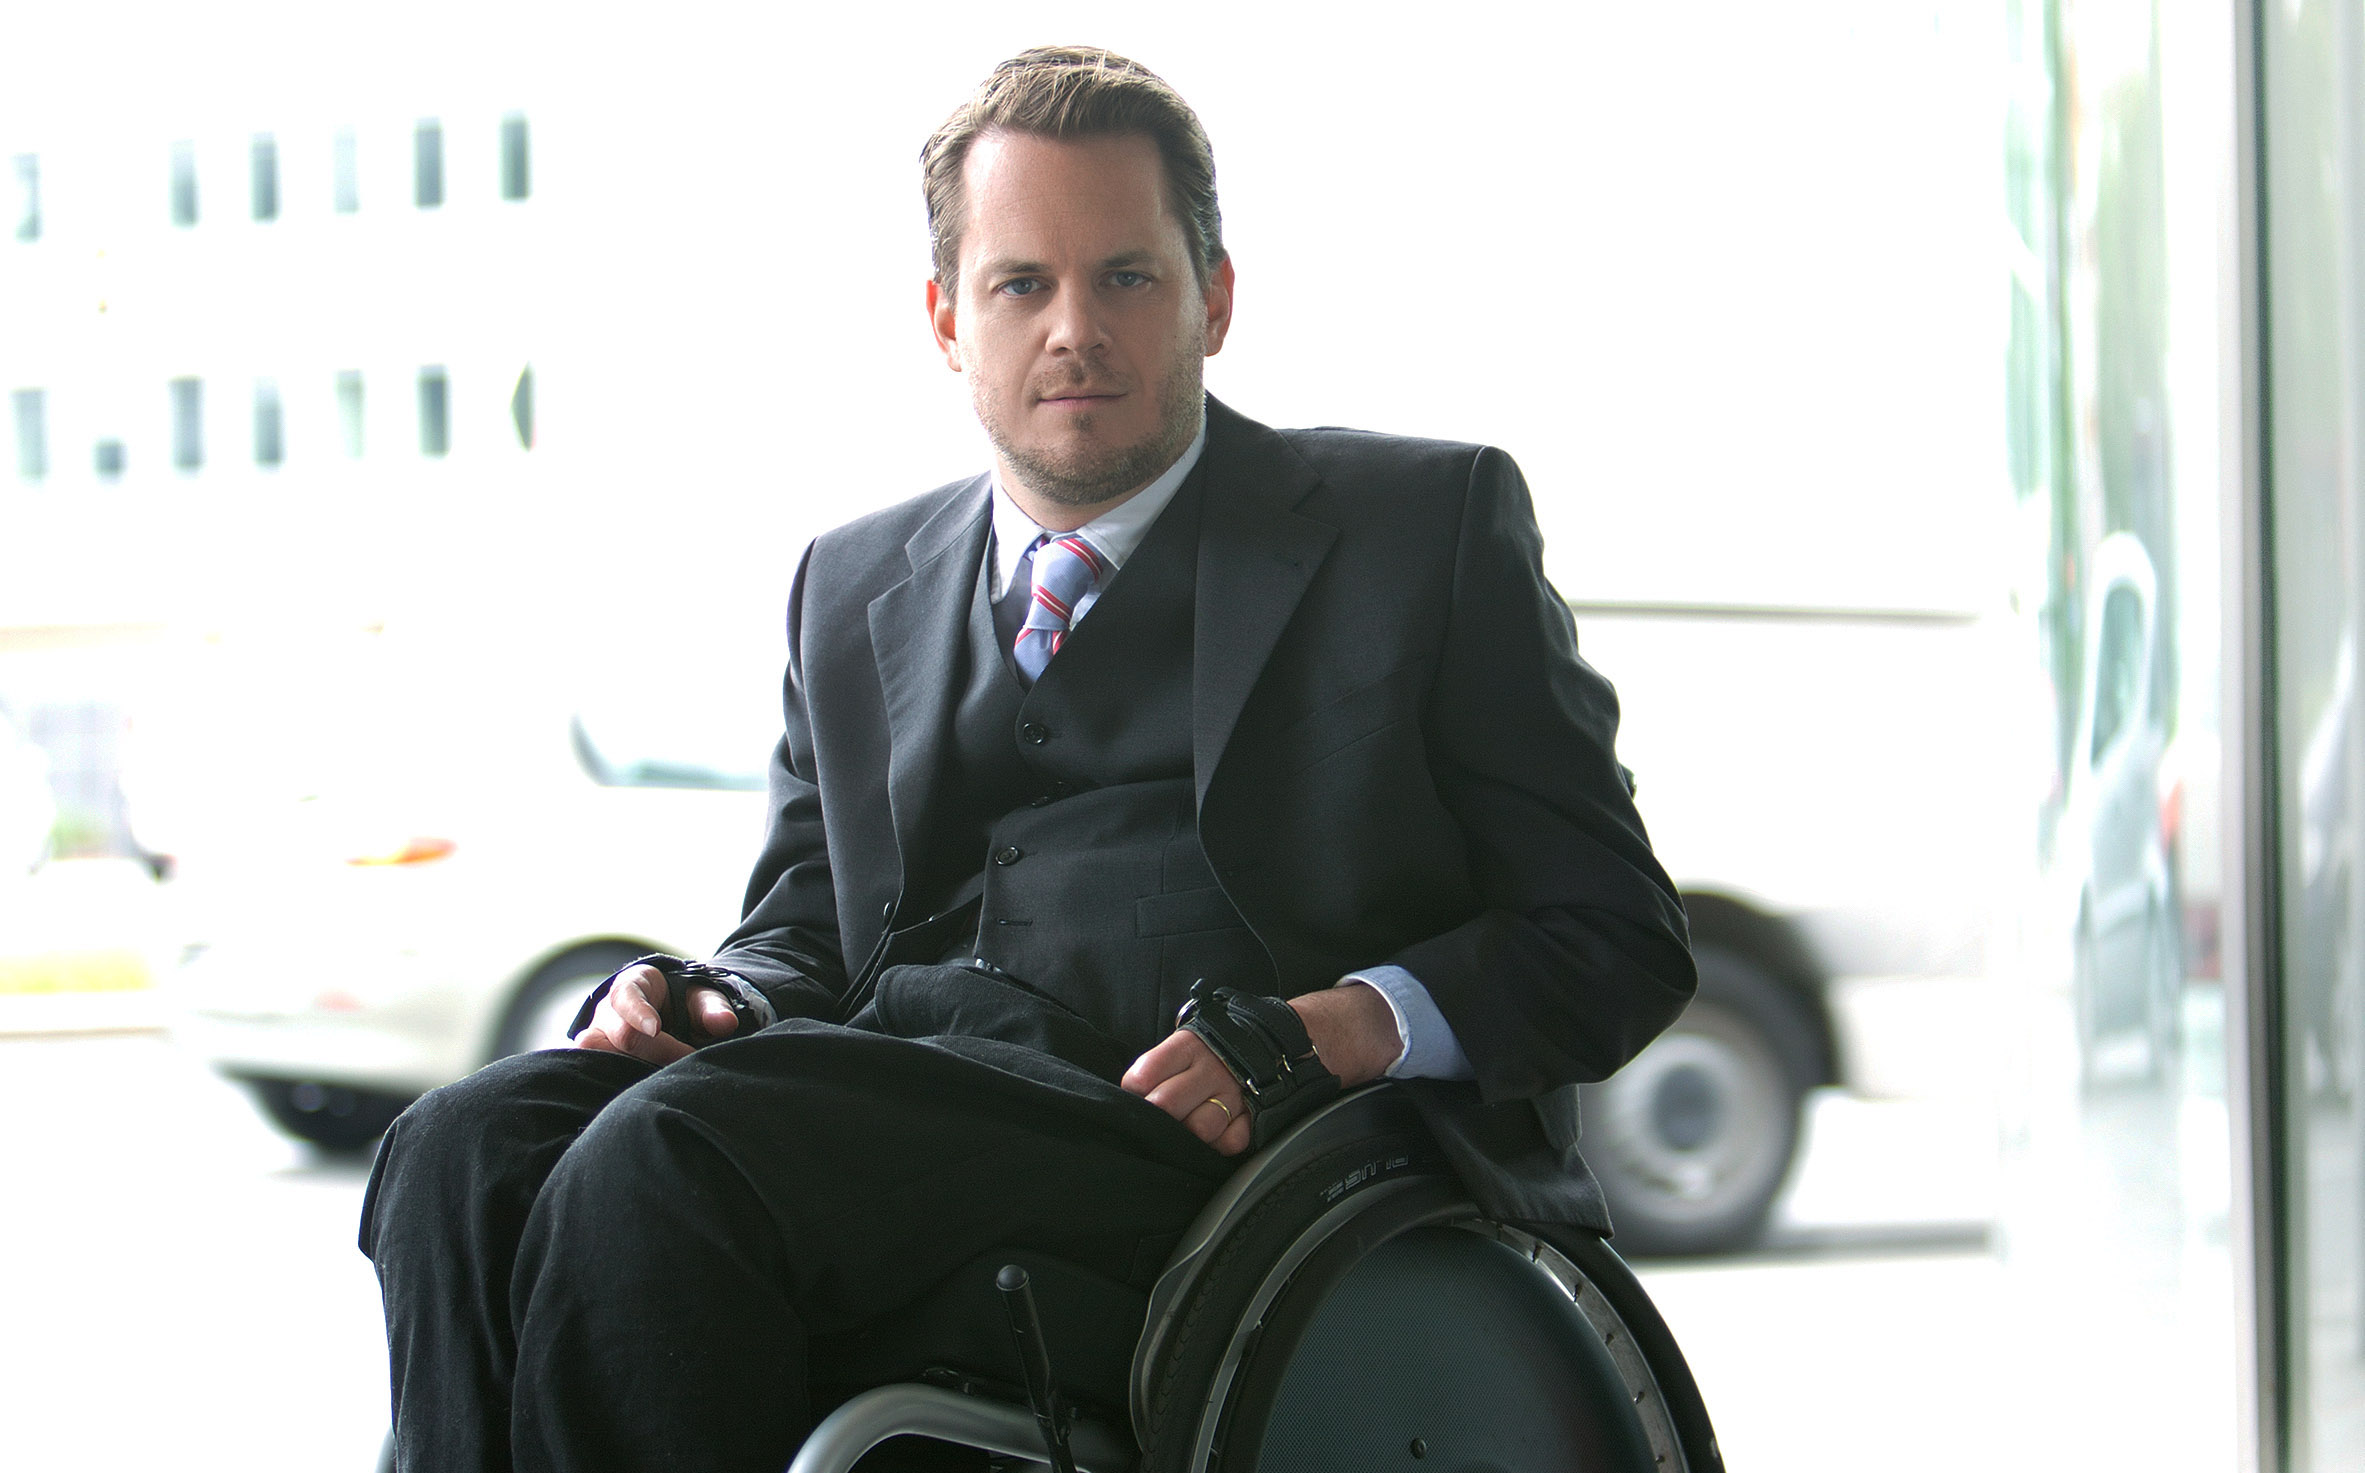 Der Unternehmenberater Gregor Demblin, der selbst eine Behinderung hat und deshalb mit Rollstuhl unterwegs ist. oto: Udo Titz